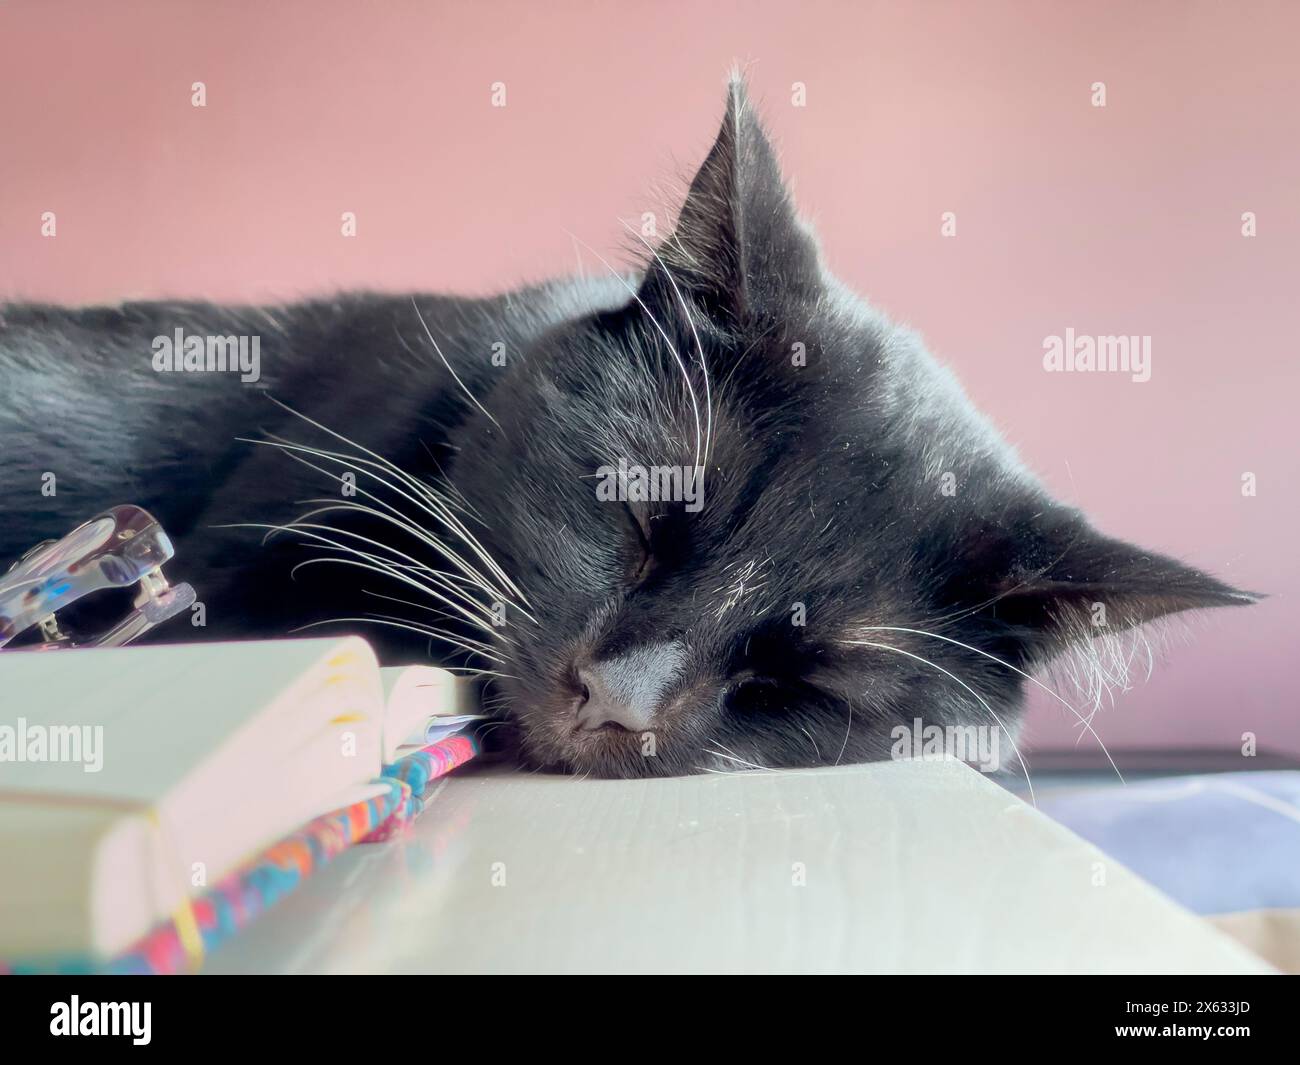 Nahaufnahme einer schwarzen Katze mit weißen Barthaaren, die auf einem offenen Buch auf einem Schreibtisch schläft. Stockfoto